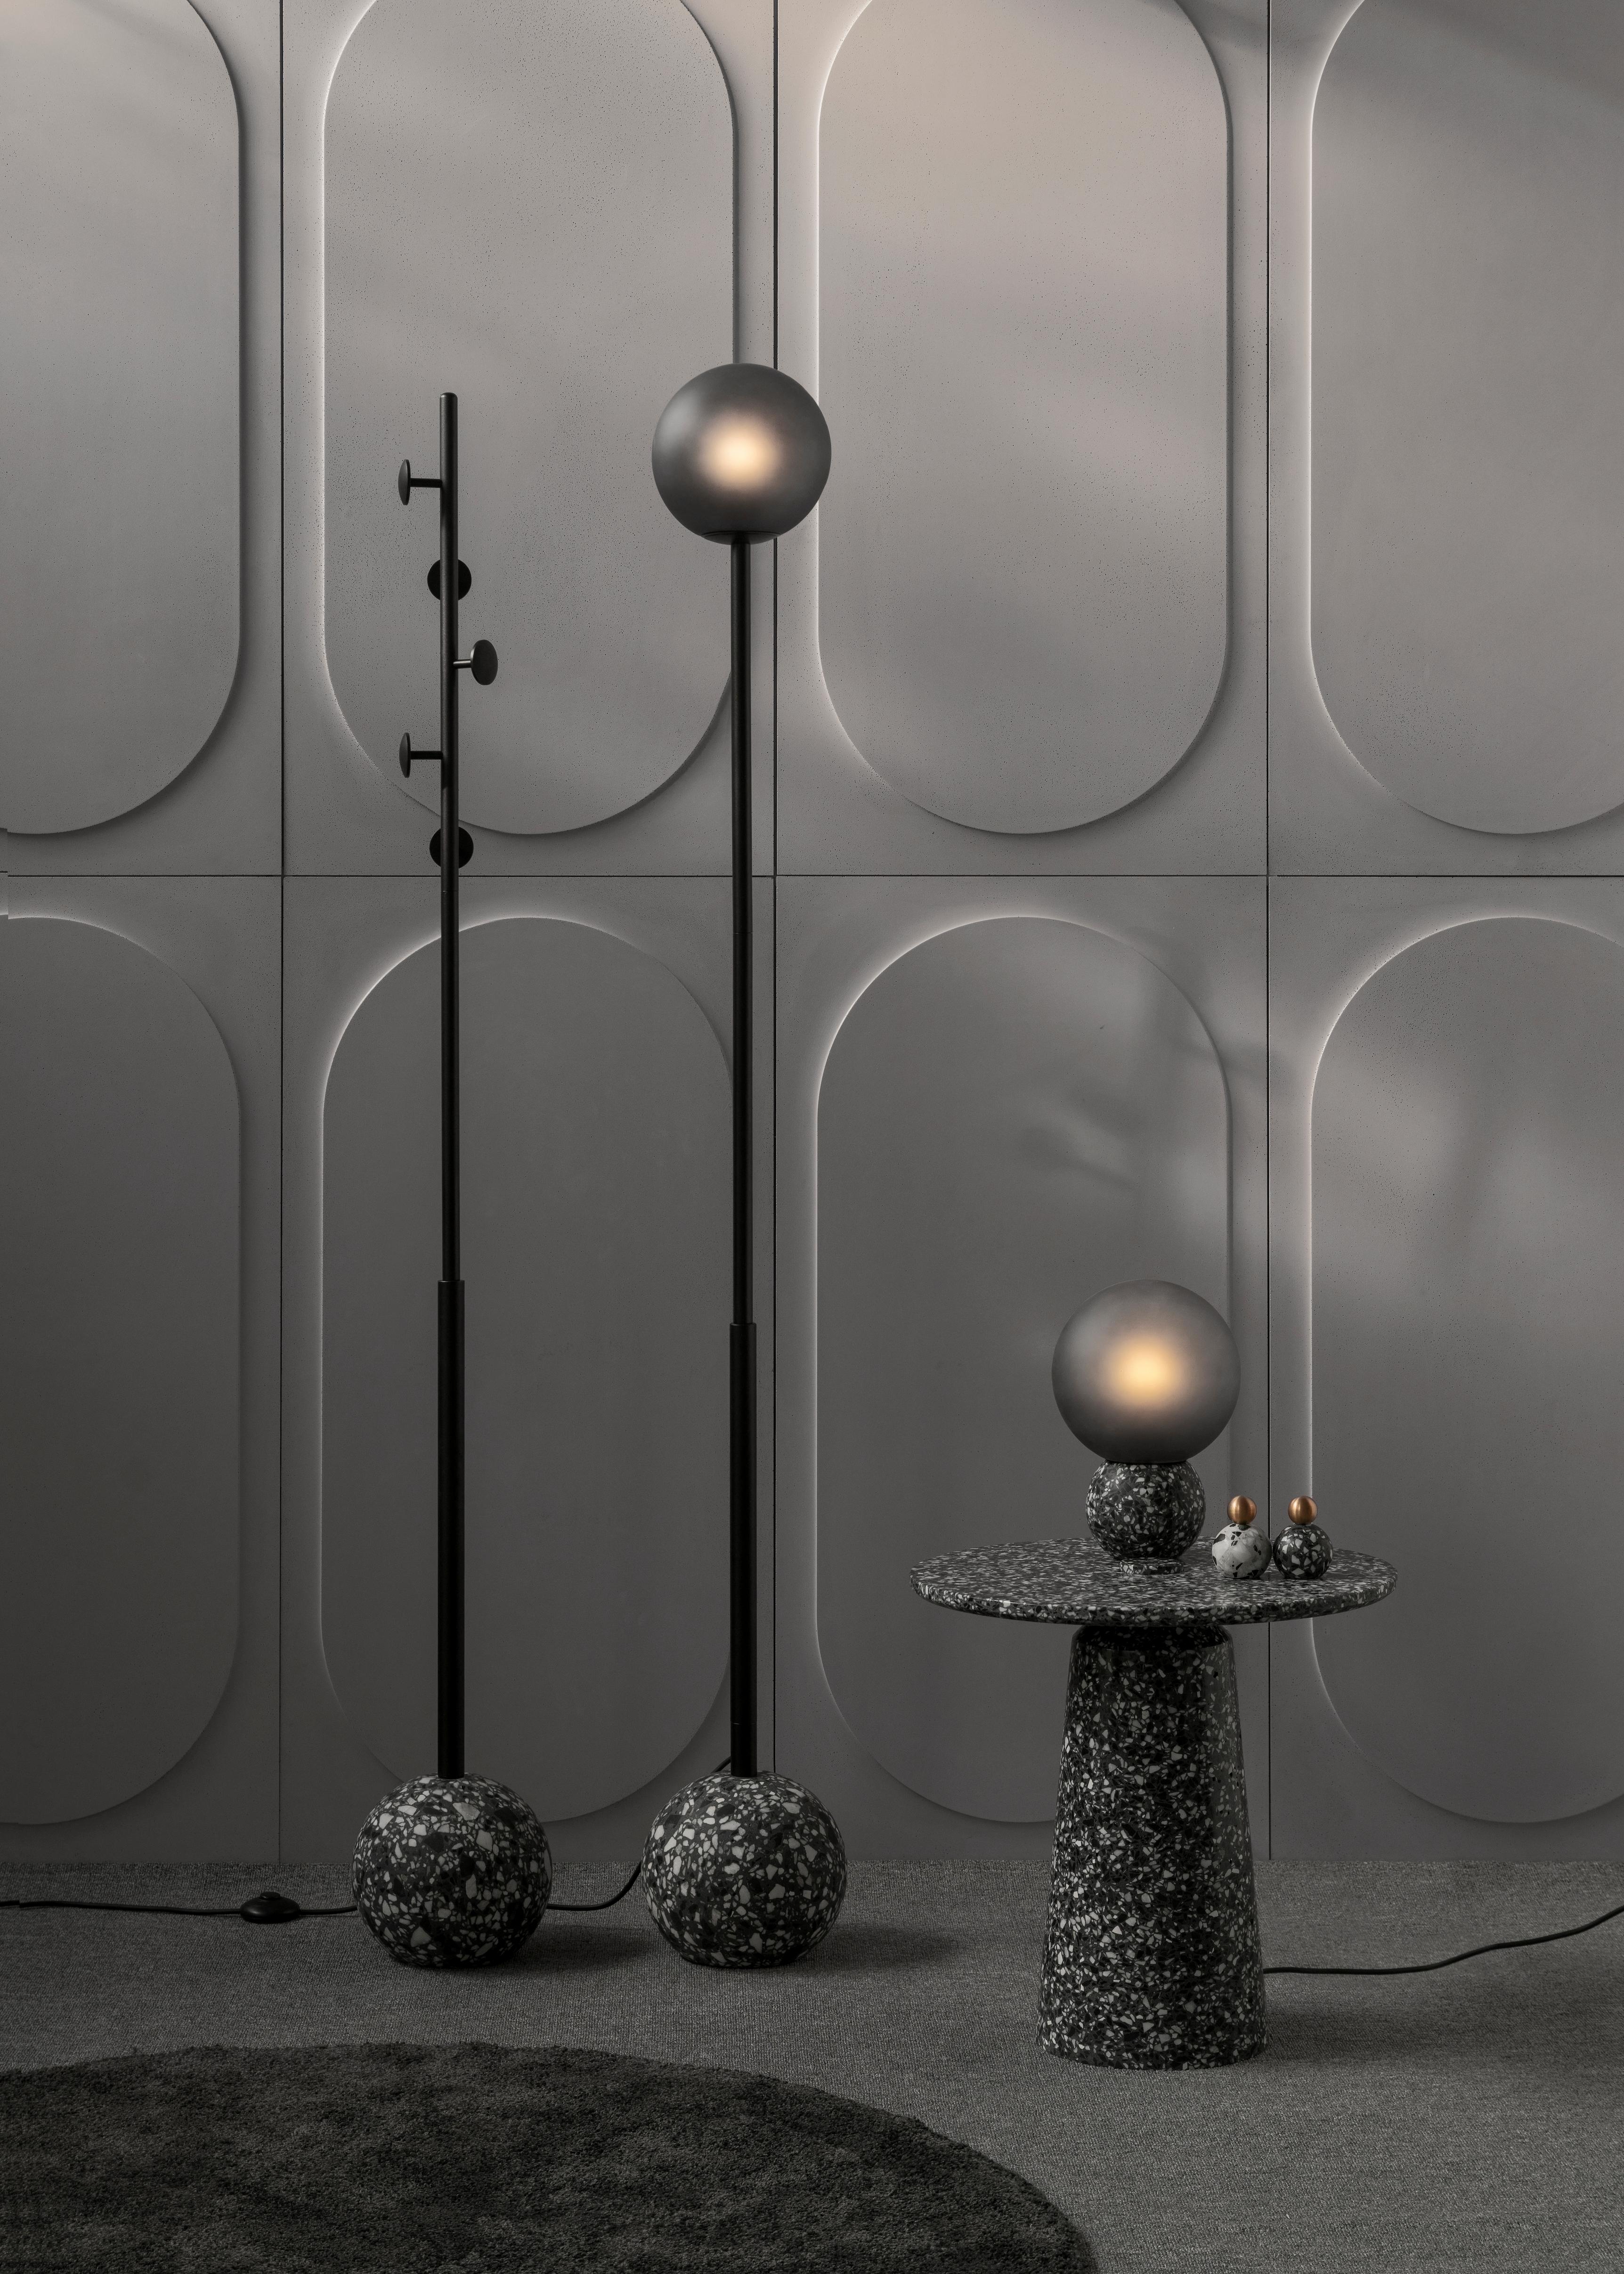 8' Kleiderbügel aus schwarzem Terrazzo

Maße: Ø23 cm × H 175 cm

Die Möbel und Leuchten von Bentu Design beziehen ihre Einzigartigkeit aus der Einfachheit ihrer Formen und ihrer Materialien. Die von den Designern von Studio Bentu selbst